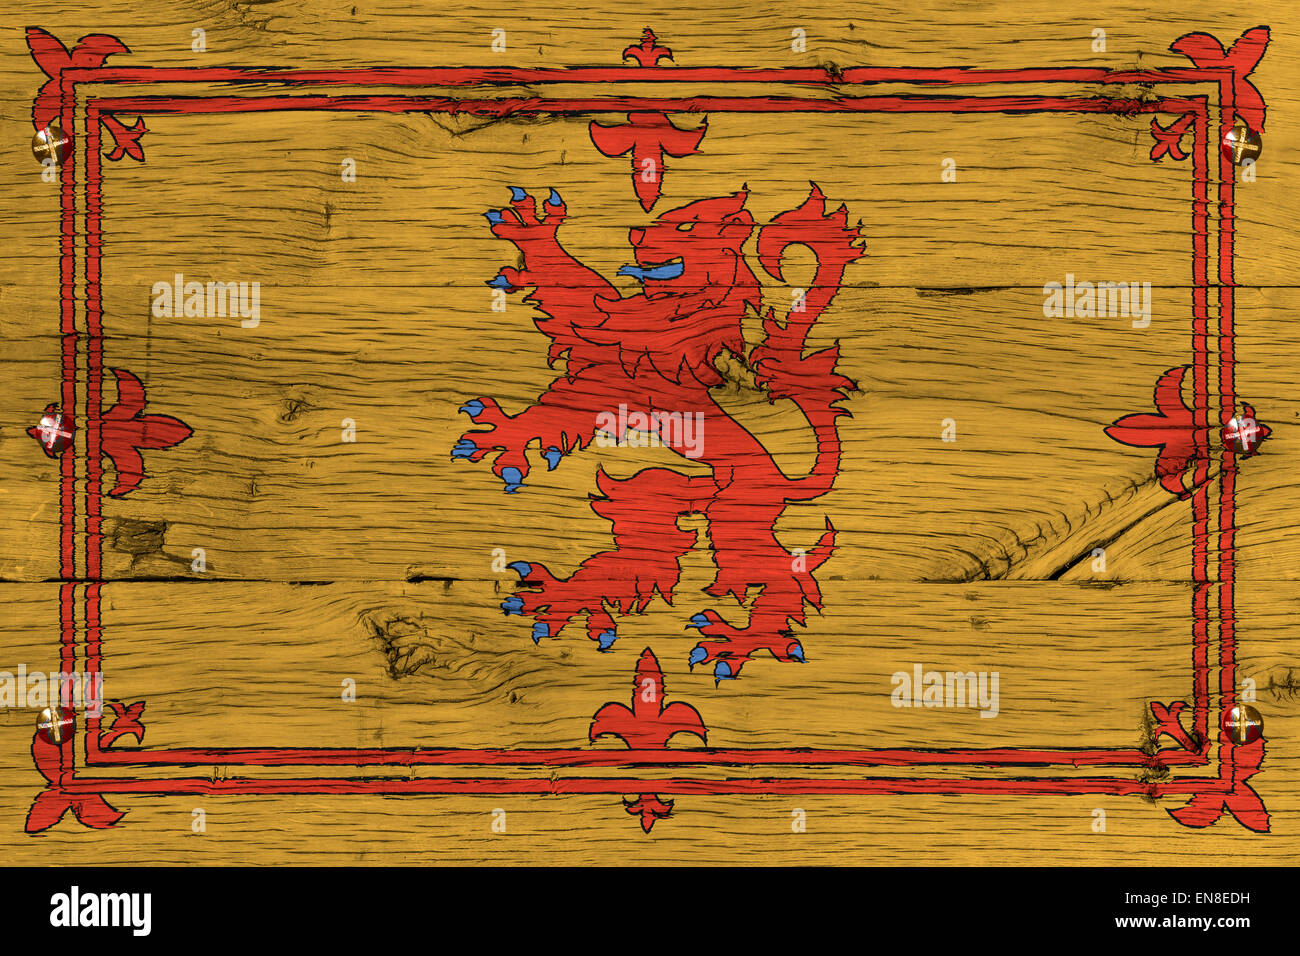 Royal Standard de l'Écosse drapeau. Également connu sous le nom de lion de l'Ecosse ou Bannière royale des armoiries royales d'Écosse. Historis Banque D'Images